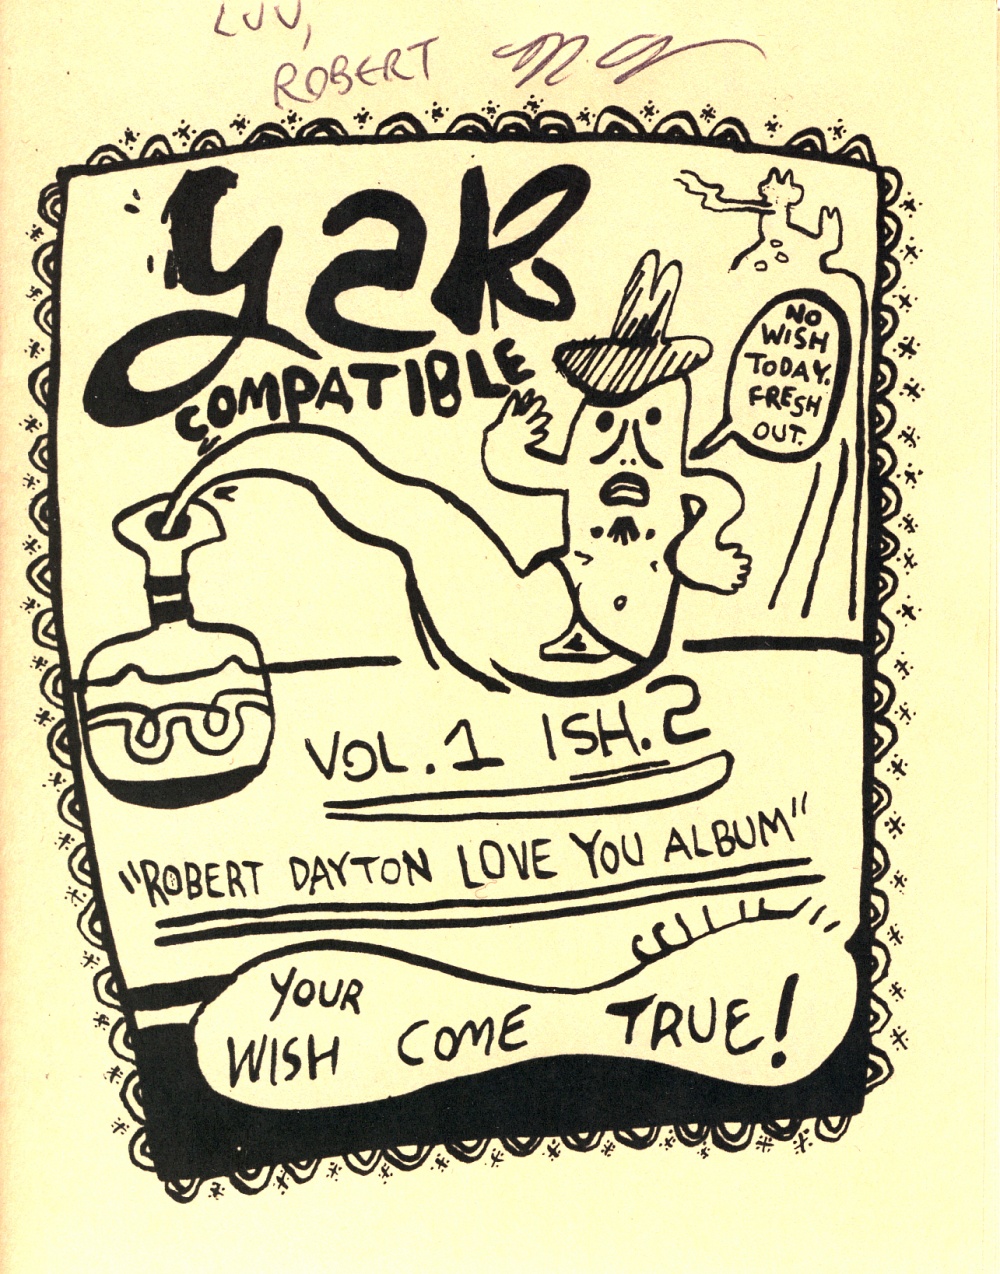 Y2K Compatible, Issue 2 - Dayton, Robert